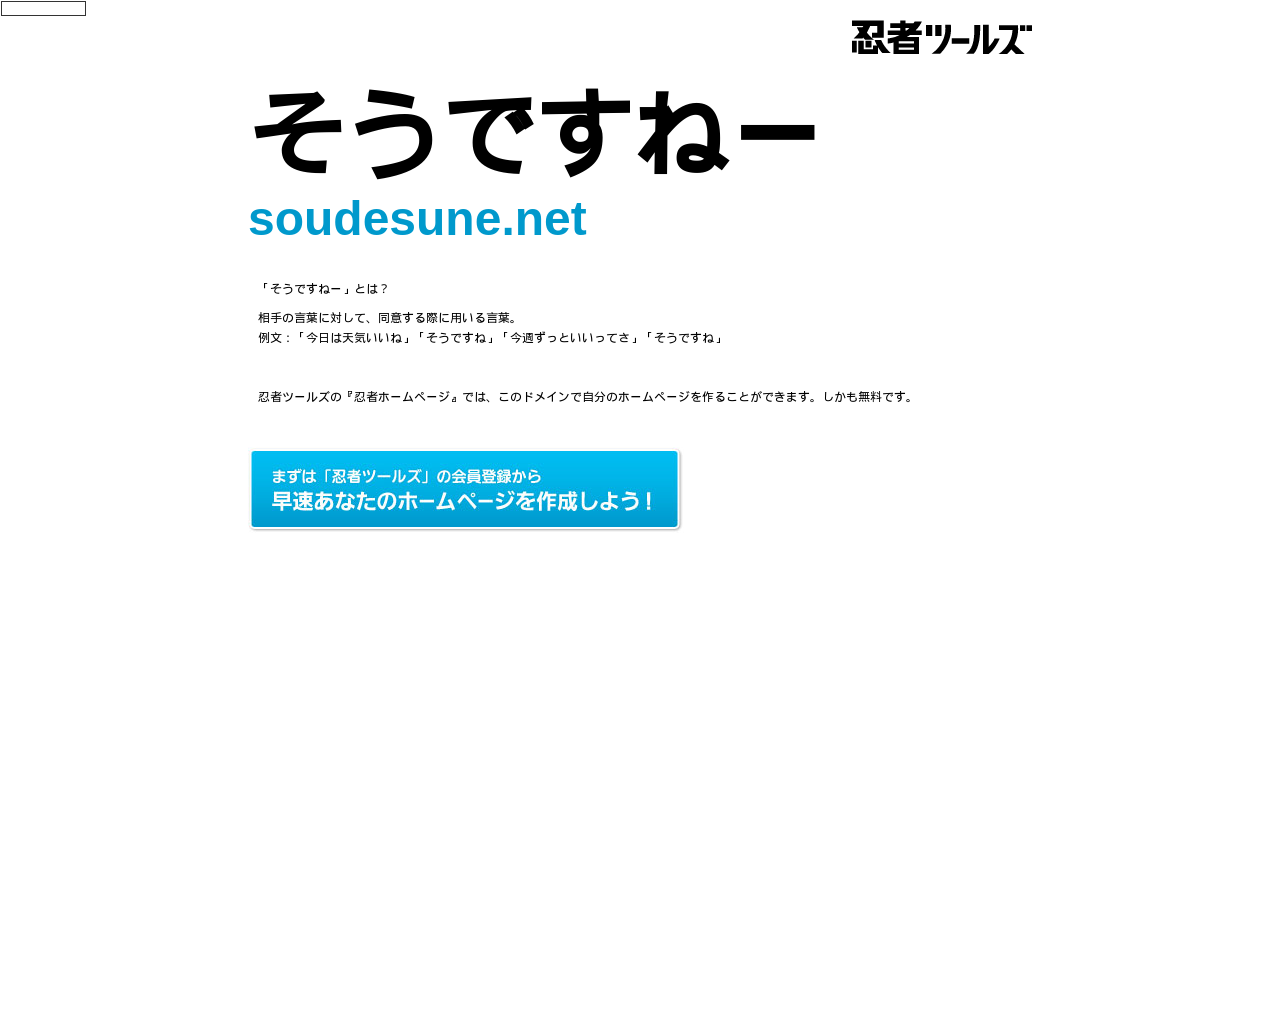 soudesune.net